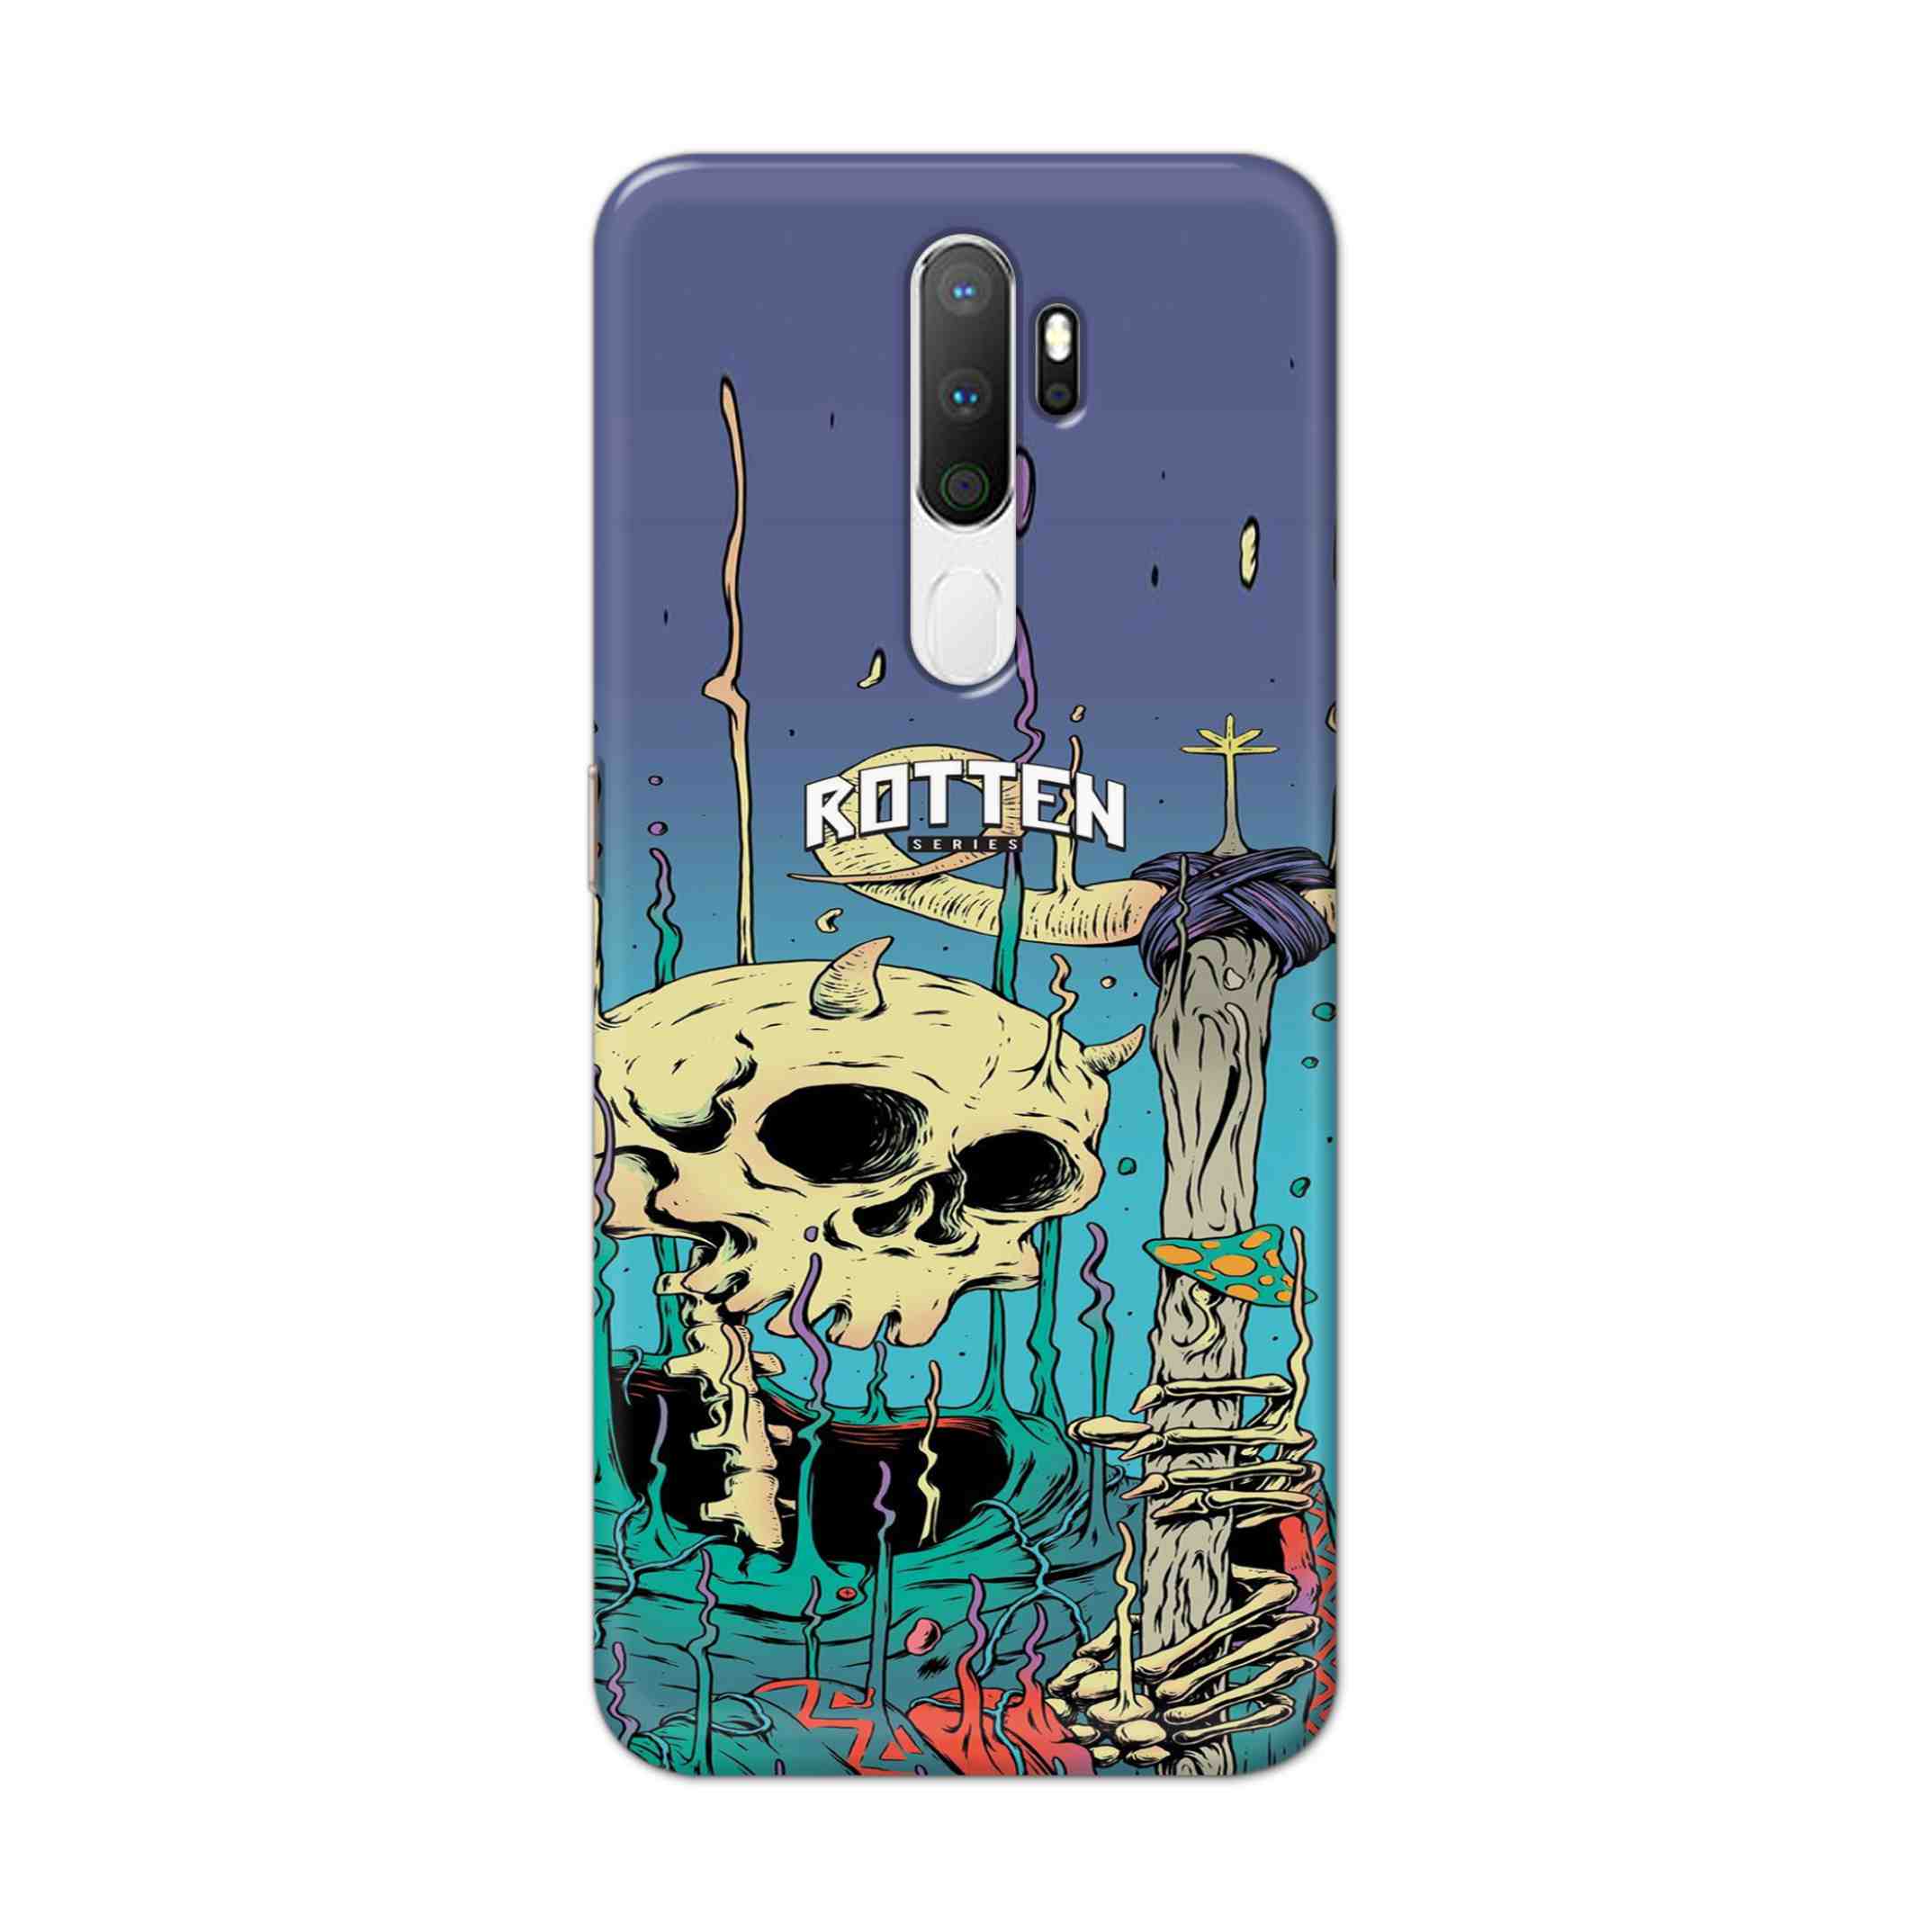 Buy Skull Hard Back Mobile Phone Case Cover For Oppo A5 (2020) Online